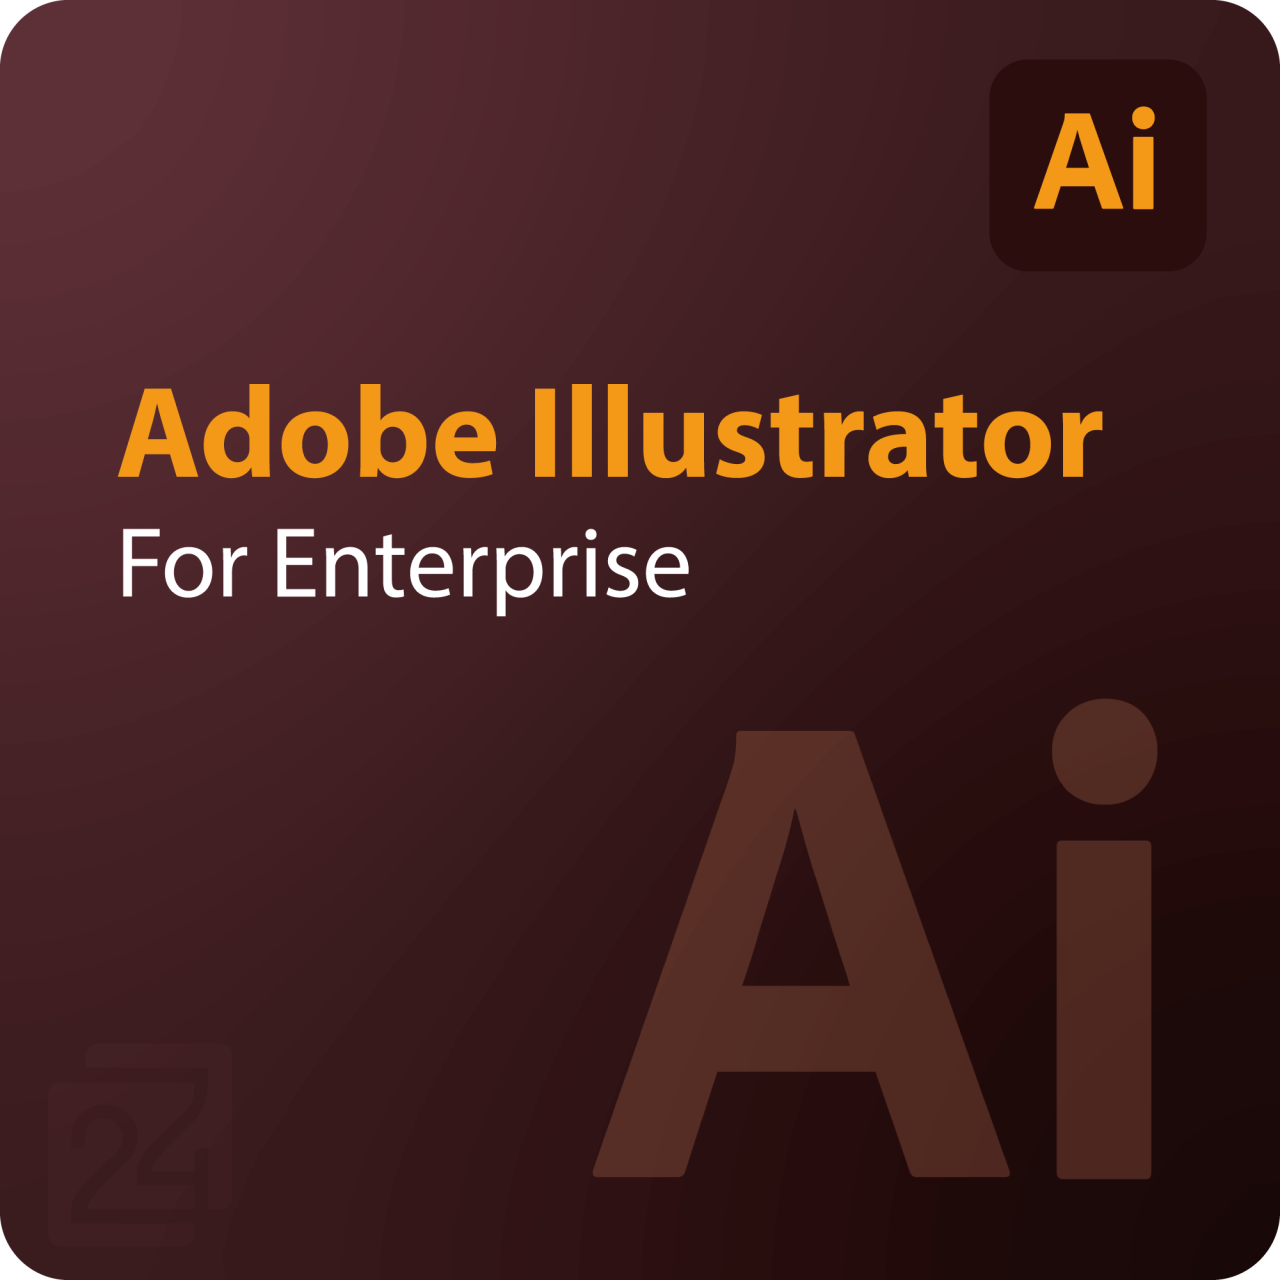 Adobe Illustrator for Enterprise